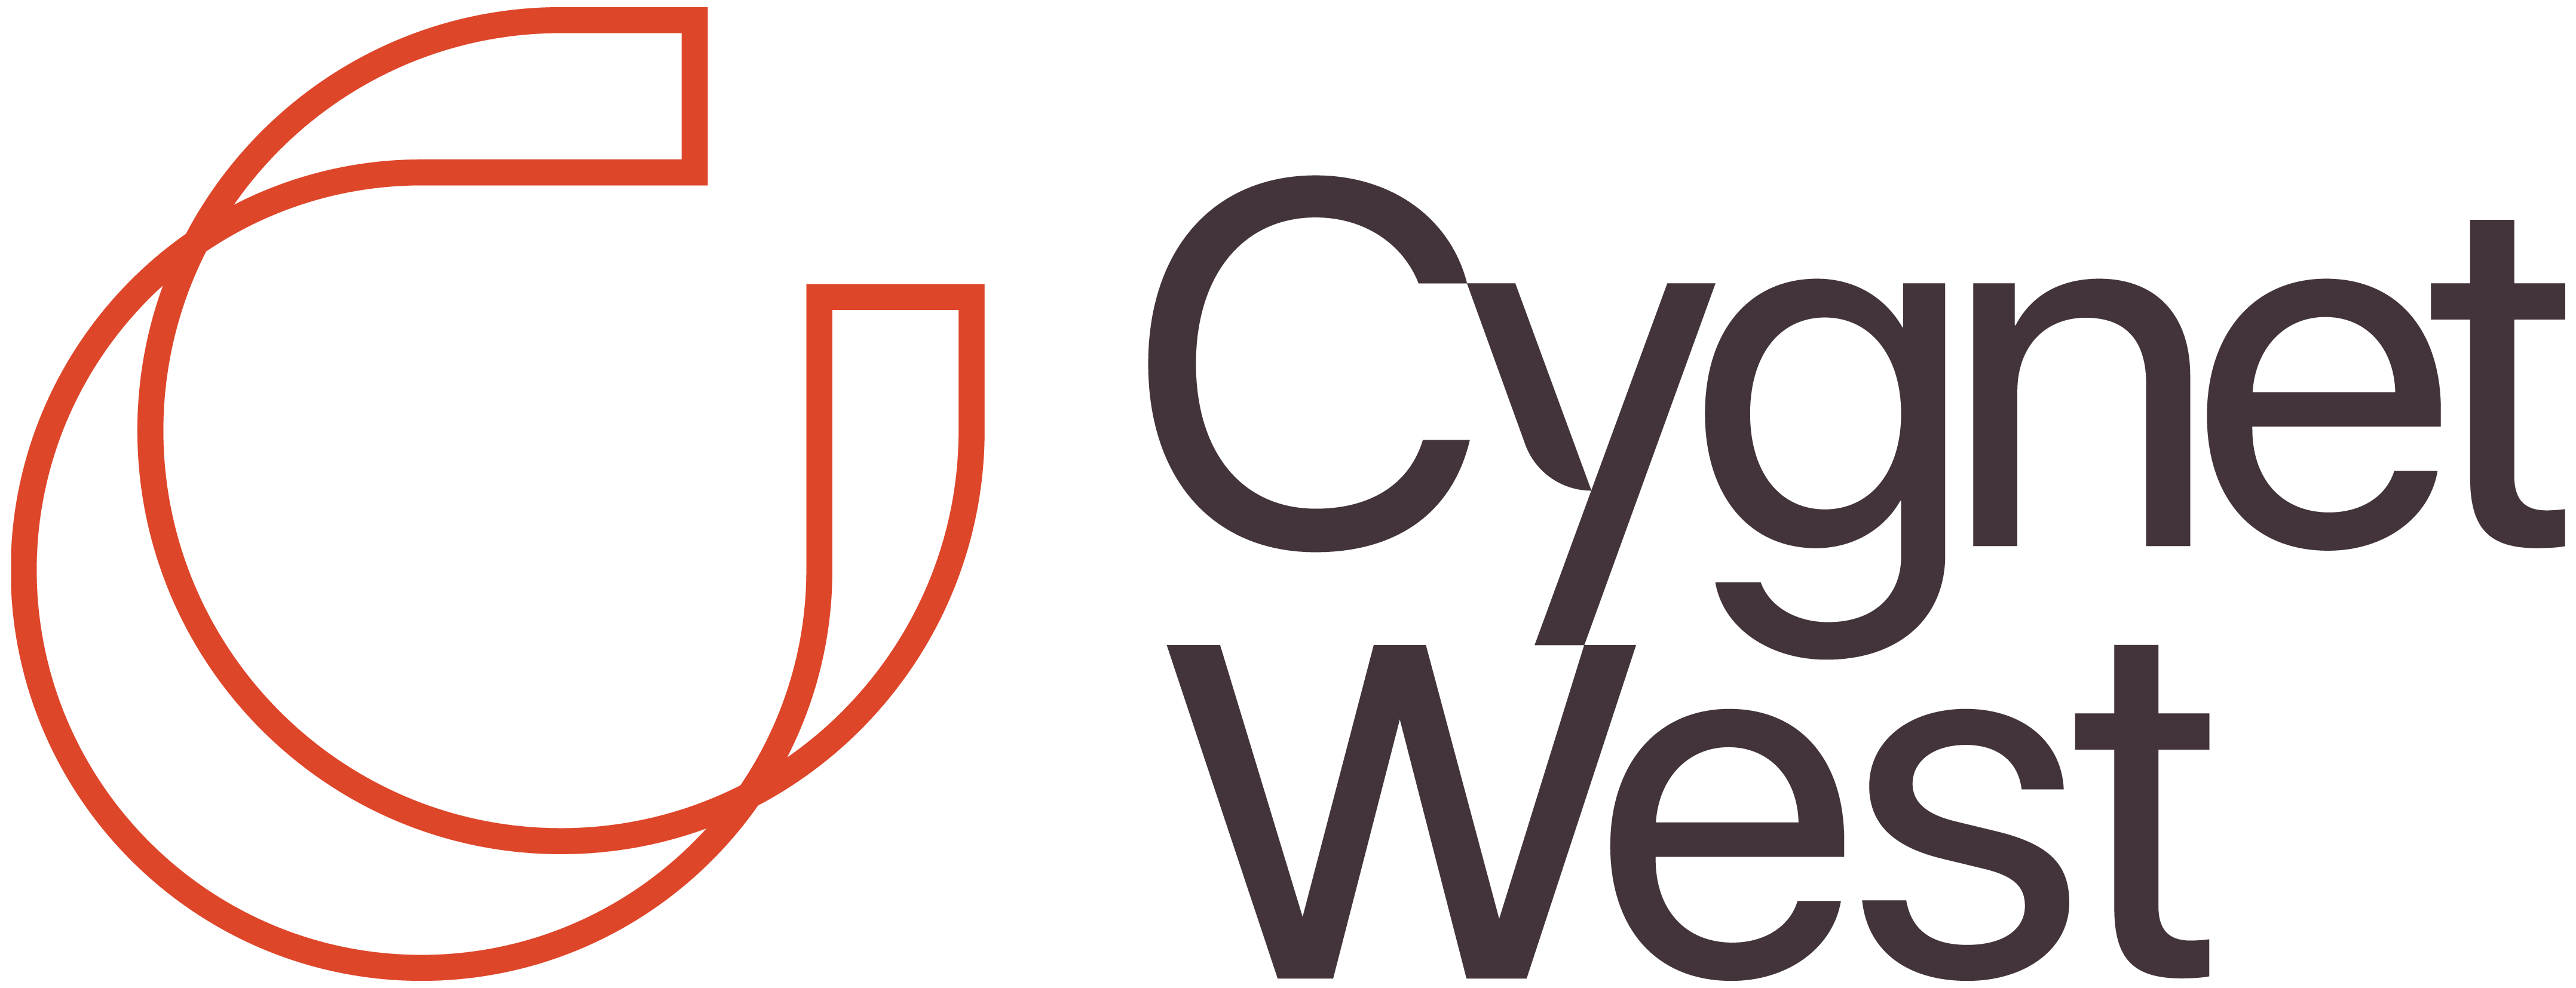 Cygnet West Retail Portfolio